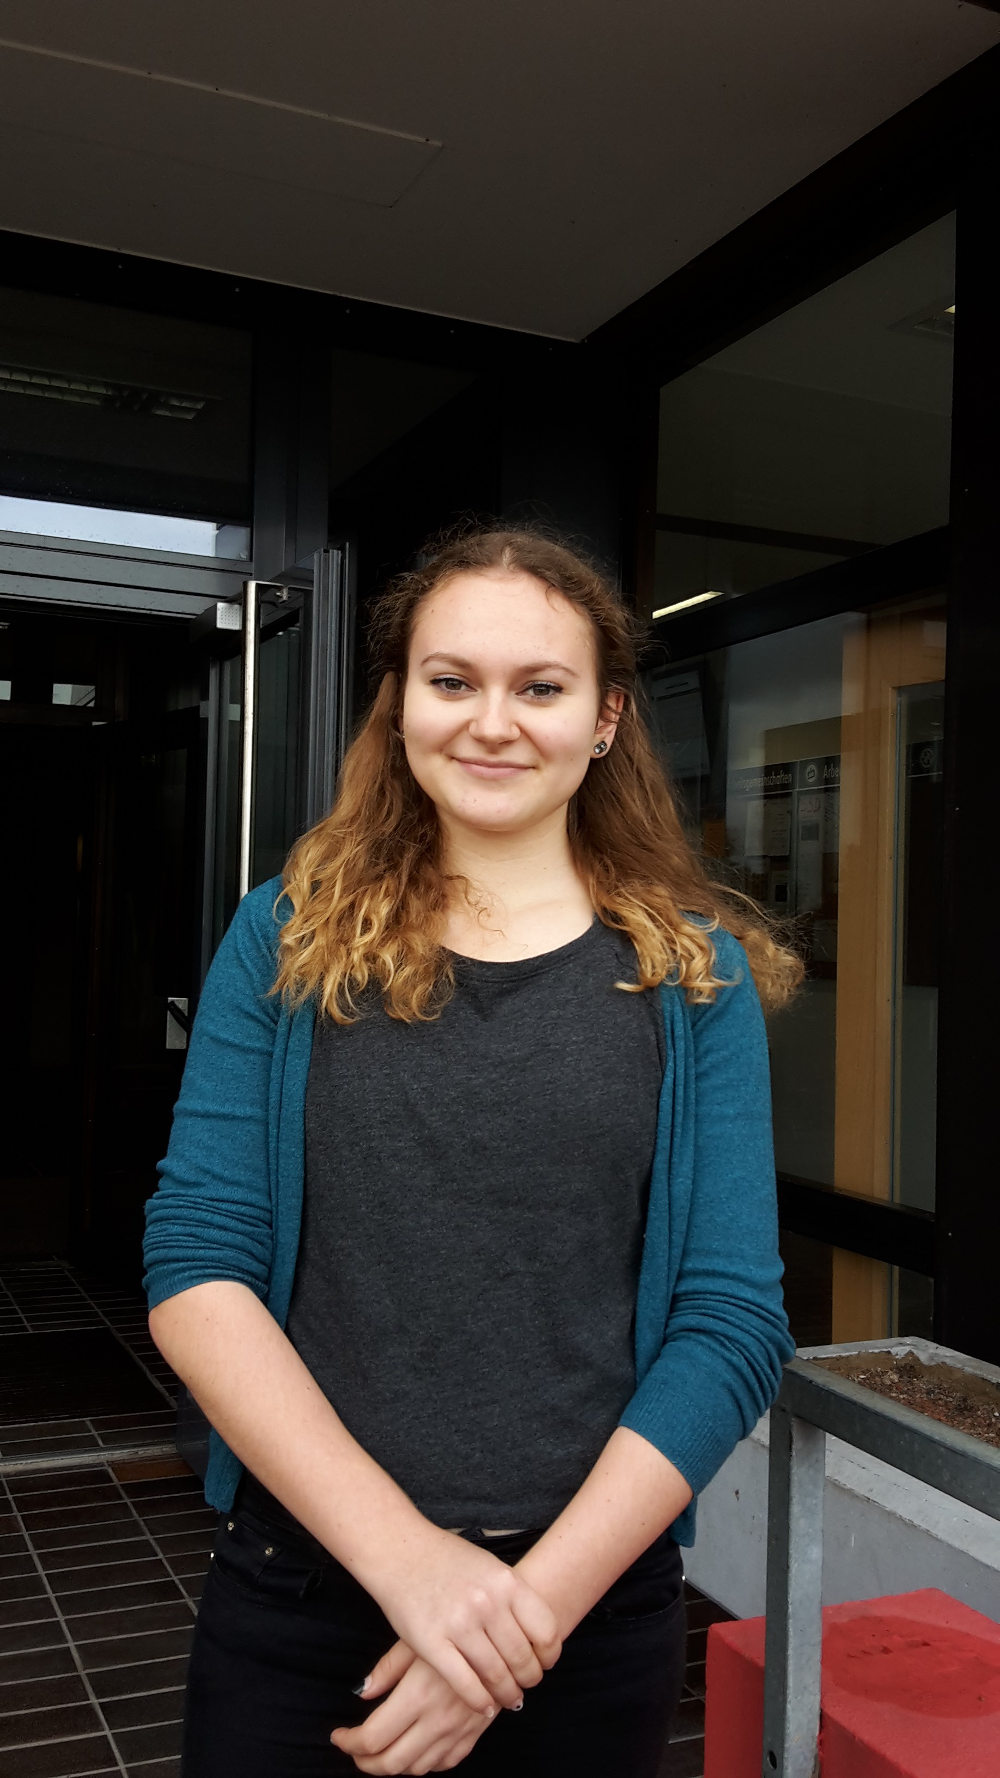 Rollkunstlauf-Meisterin Eleonora Tissen macht 2016 ihr Abitur am Hartmanni-Gymnasium